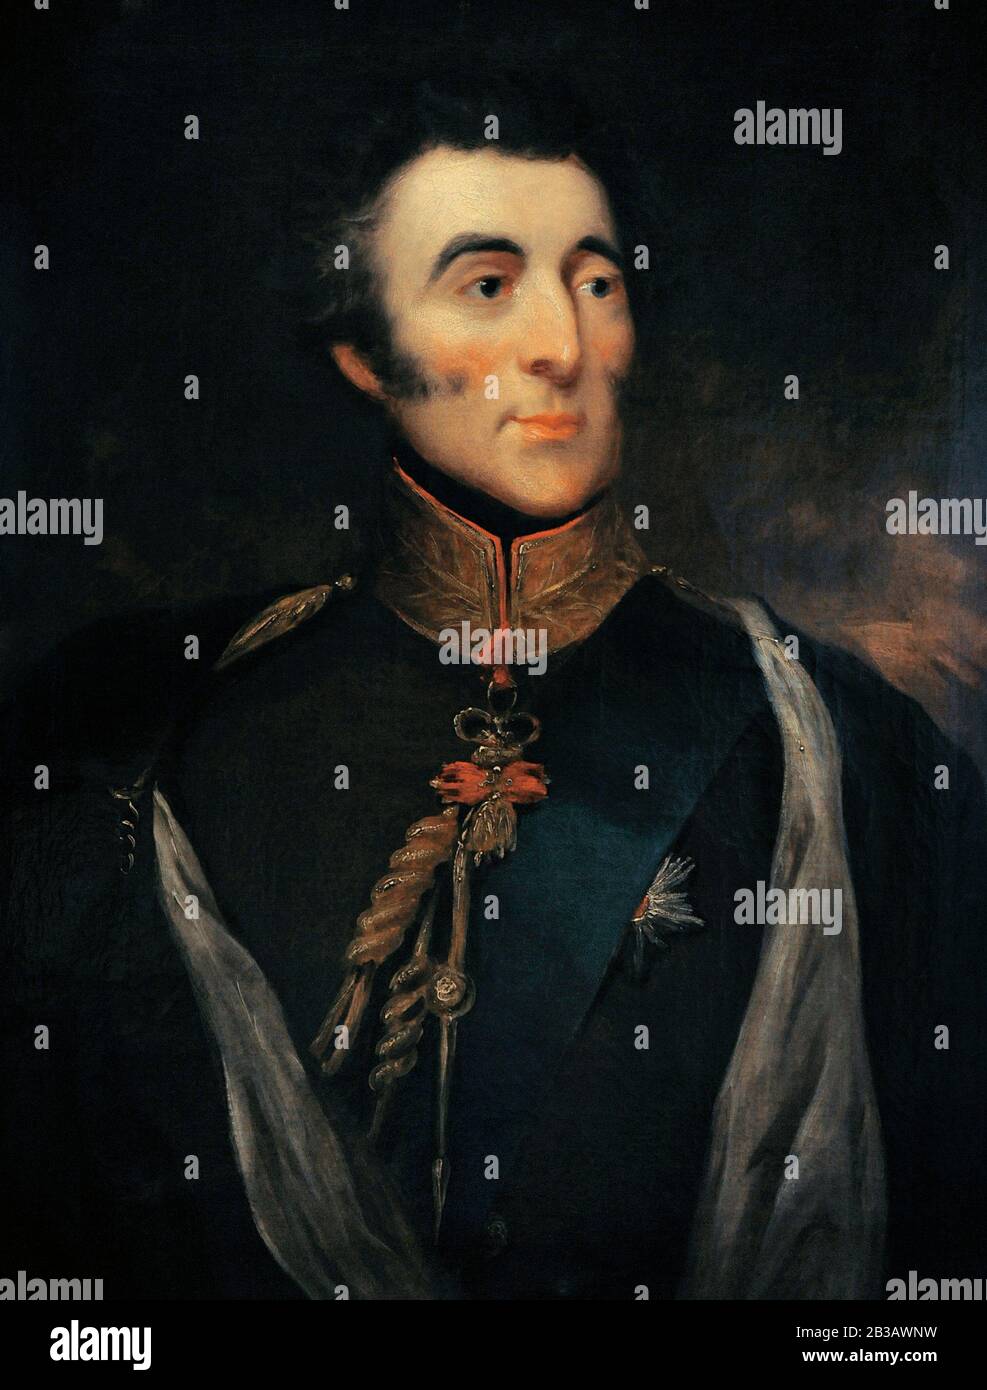 Arthur Wellesley (1769-1852). Der 1. Herzog von Wellington. Britisches Militär und Premierminister. Porträt, das John Jackson (1778-1831), ca. 1820-1825, zugeschrieben wird. Lazaro Galdiano Museum. Madrid. Spanien. Stockfoto